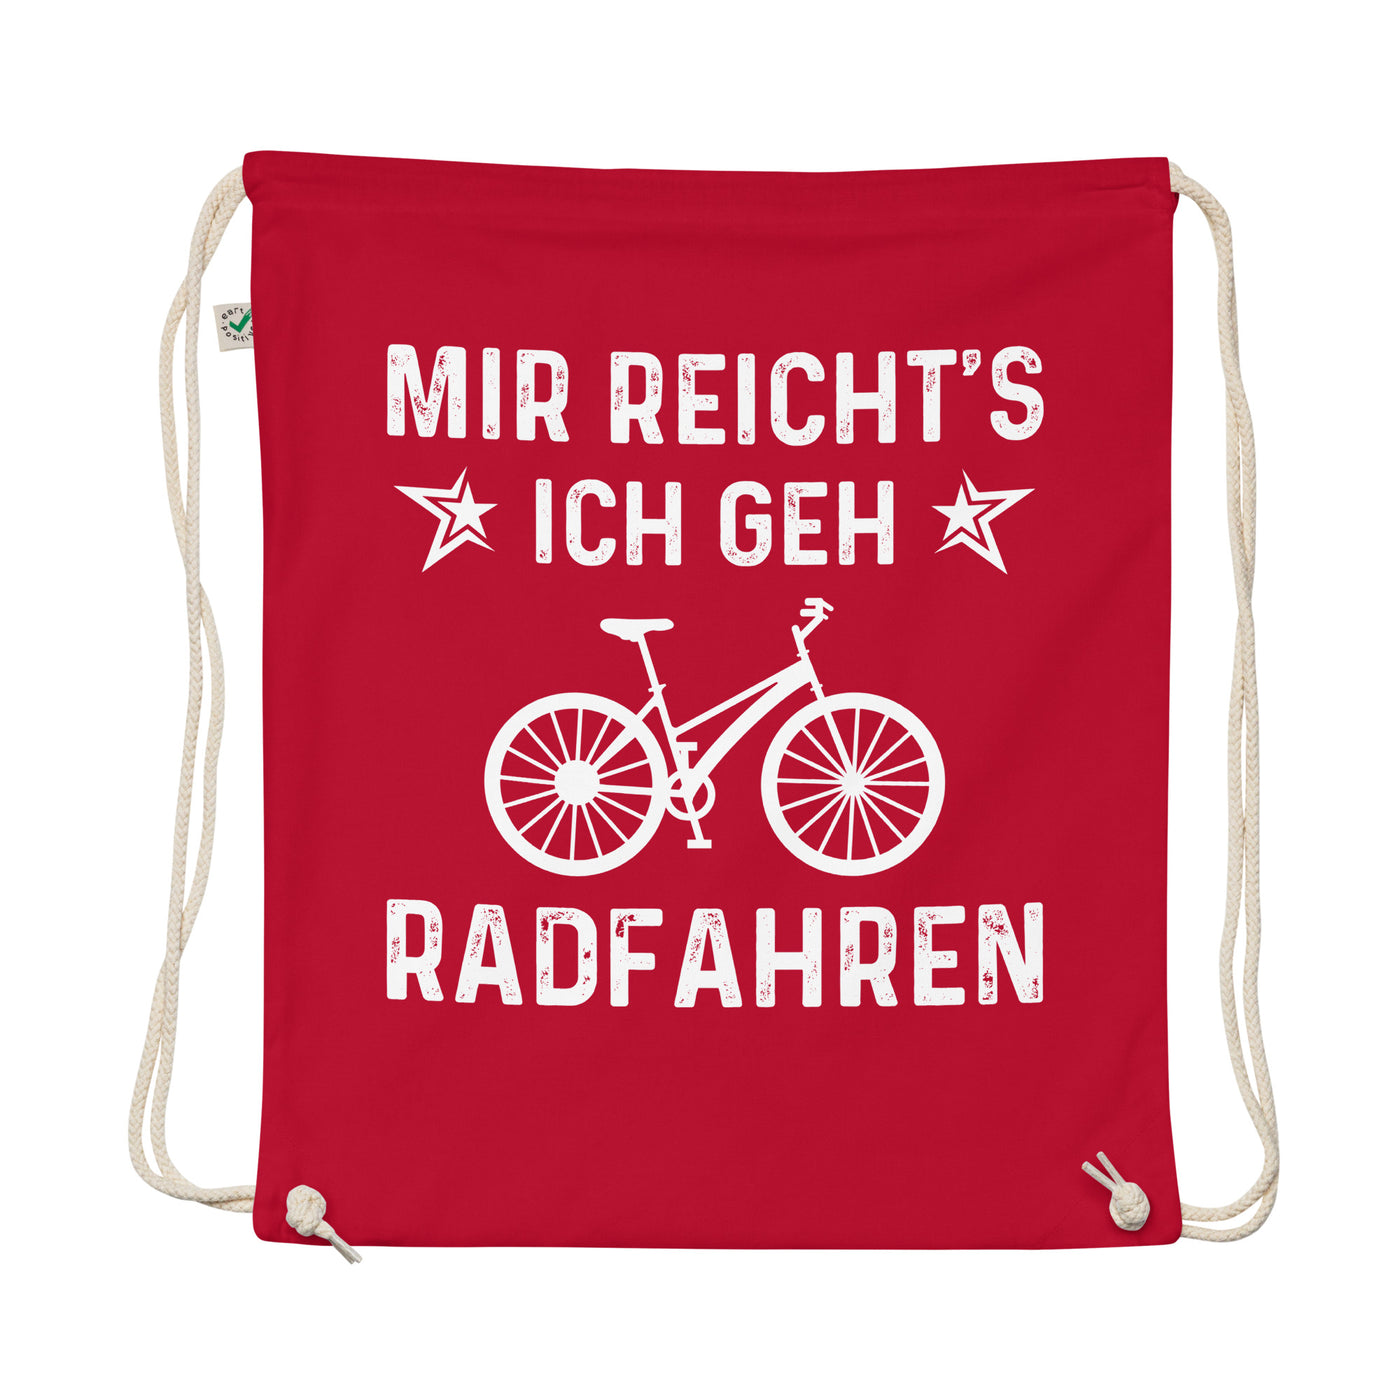 Mir Reicht'S Ich Gen Radfahren - Organic Turnbeutel fahrrad